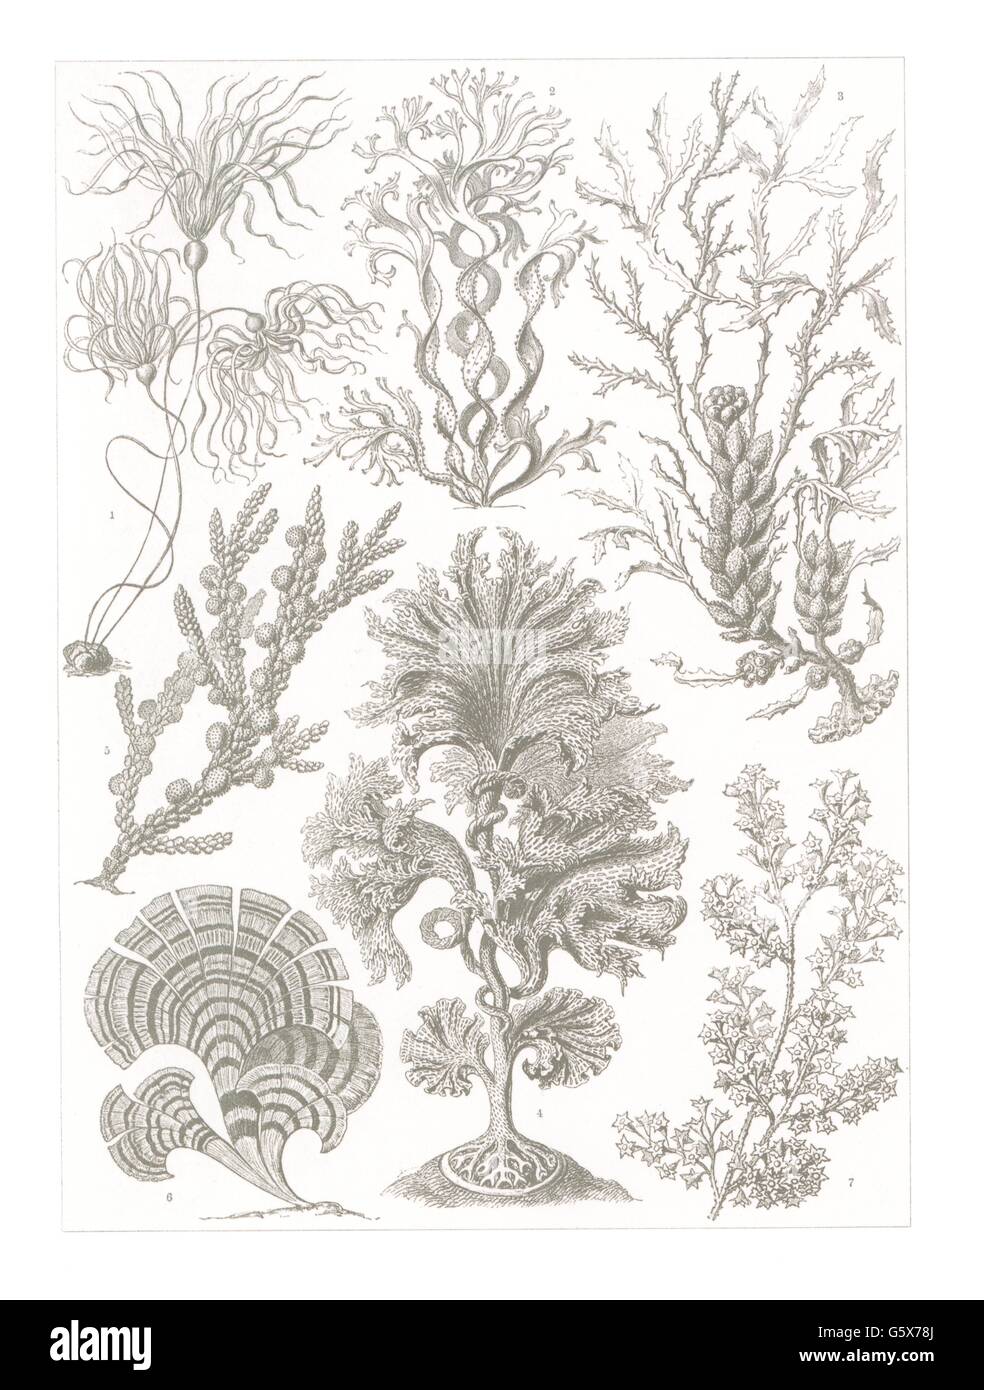 botanik, Braunalgen (Fucacae), Farblithographie, aus: Ernst Haeckel, 'Kunstformen der Natur', Leipzig - Wien, 1899 - 1904, Additional-Rights-Clearences-not available Stockfoto